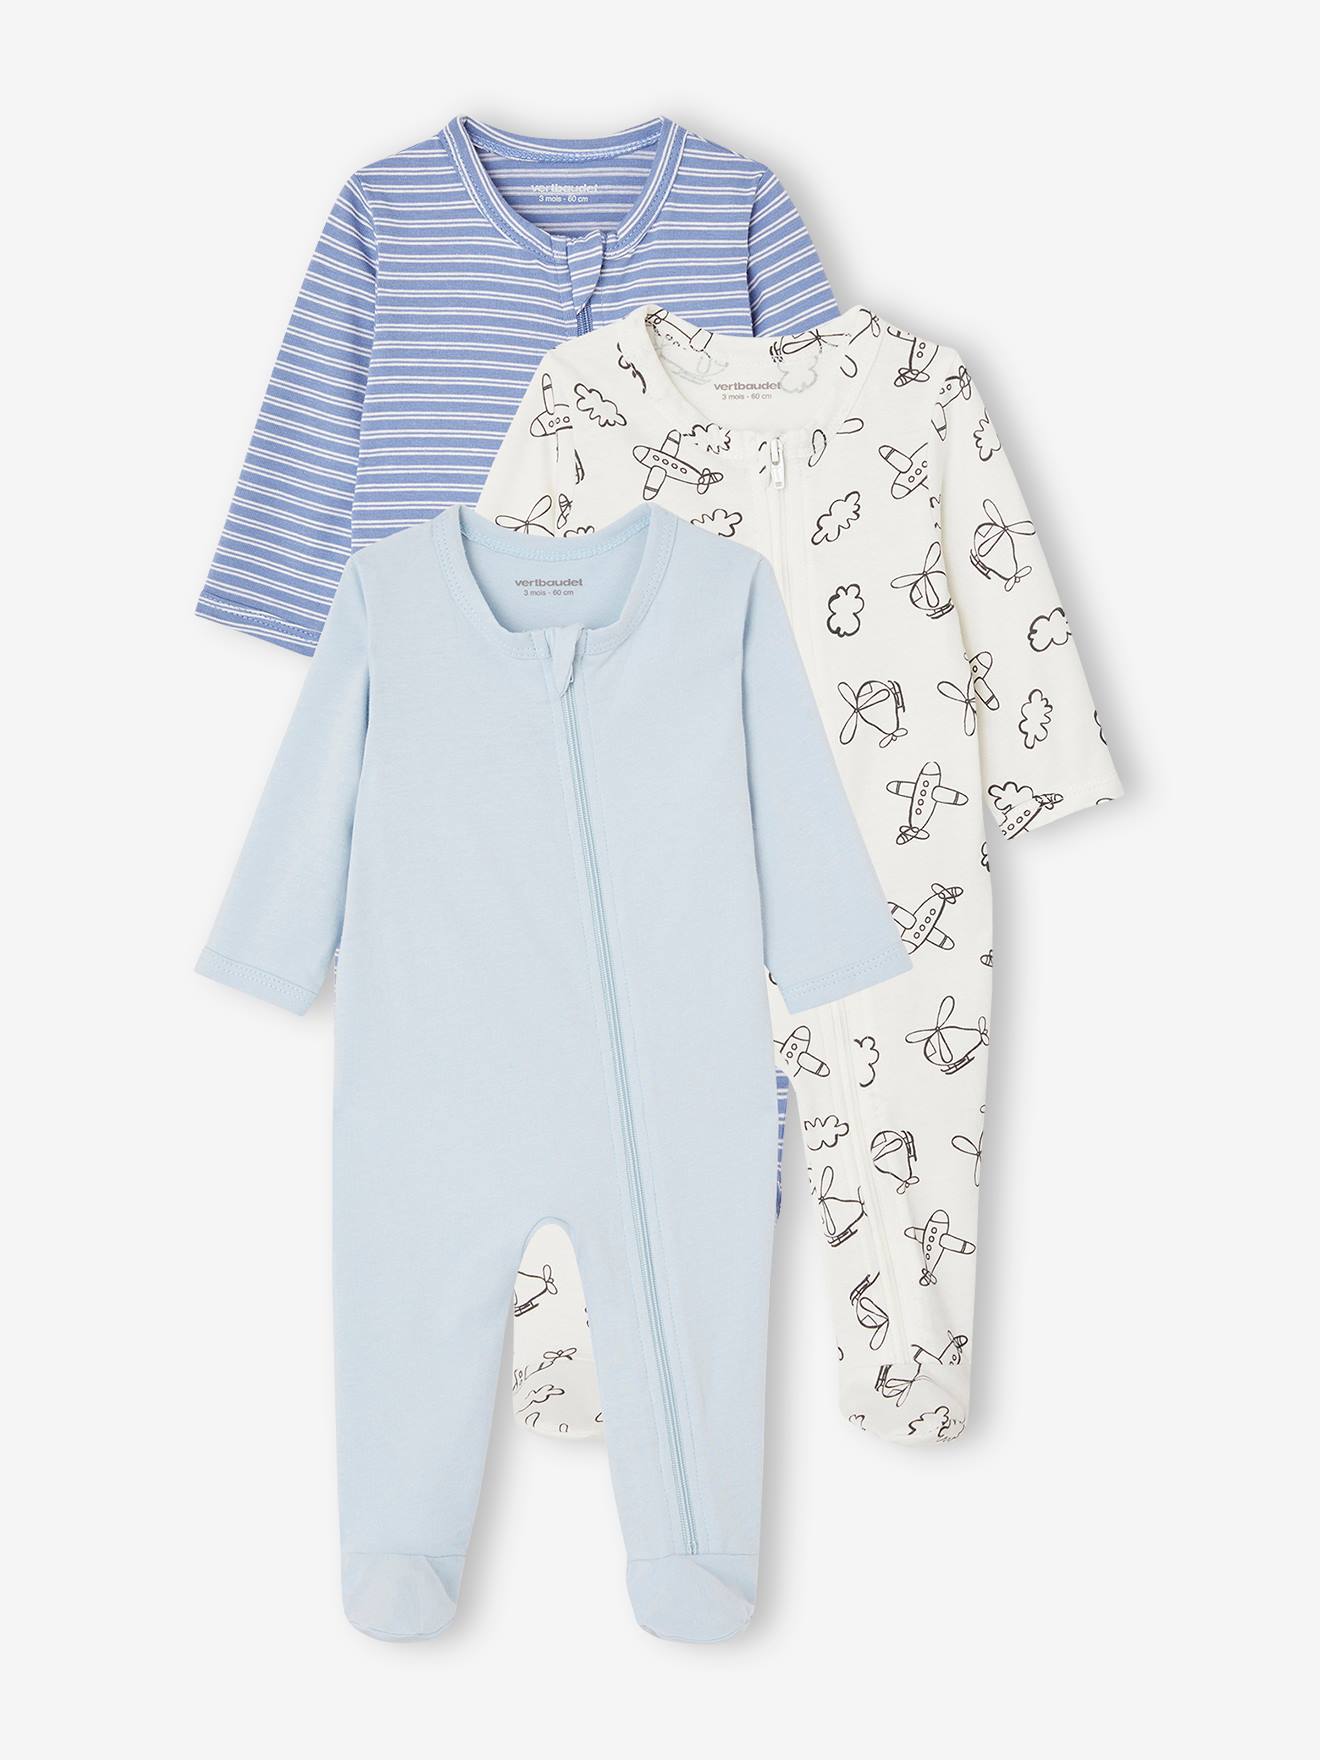 Lot de 3 pyjamas bébé en jersey ouverture zippée BASICS bleu chambray - Vertbaudet